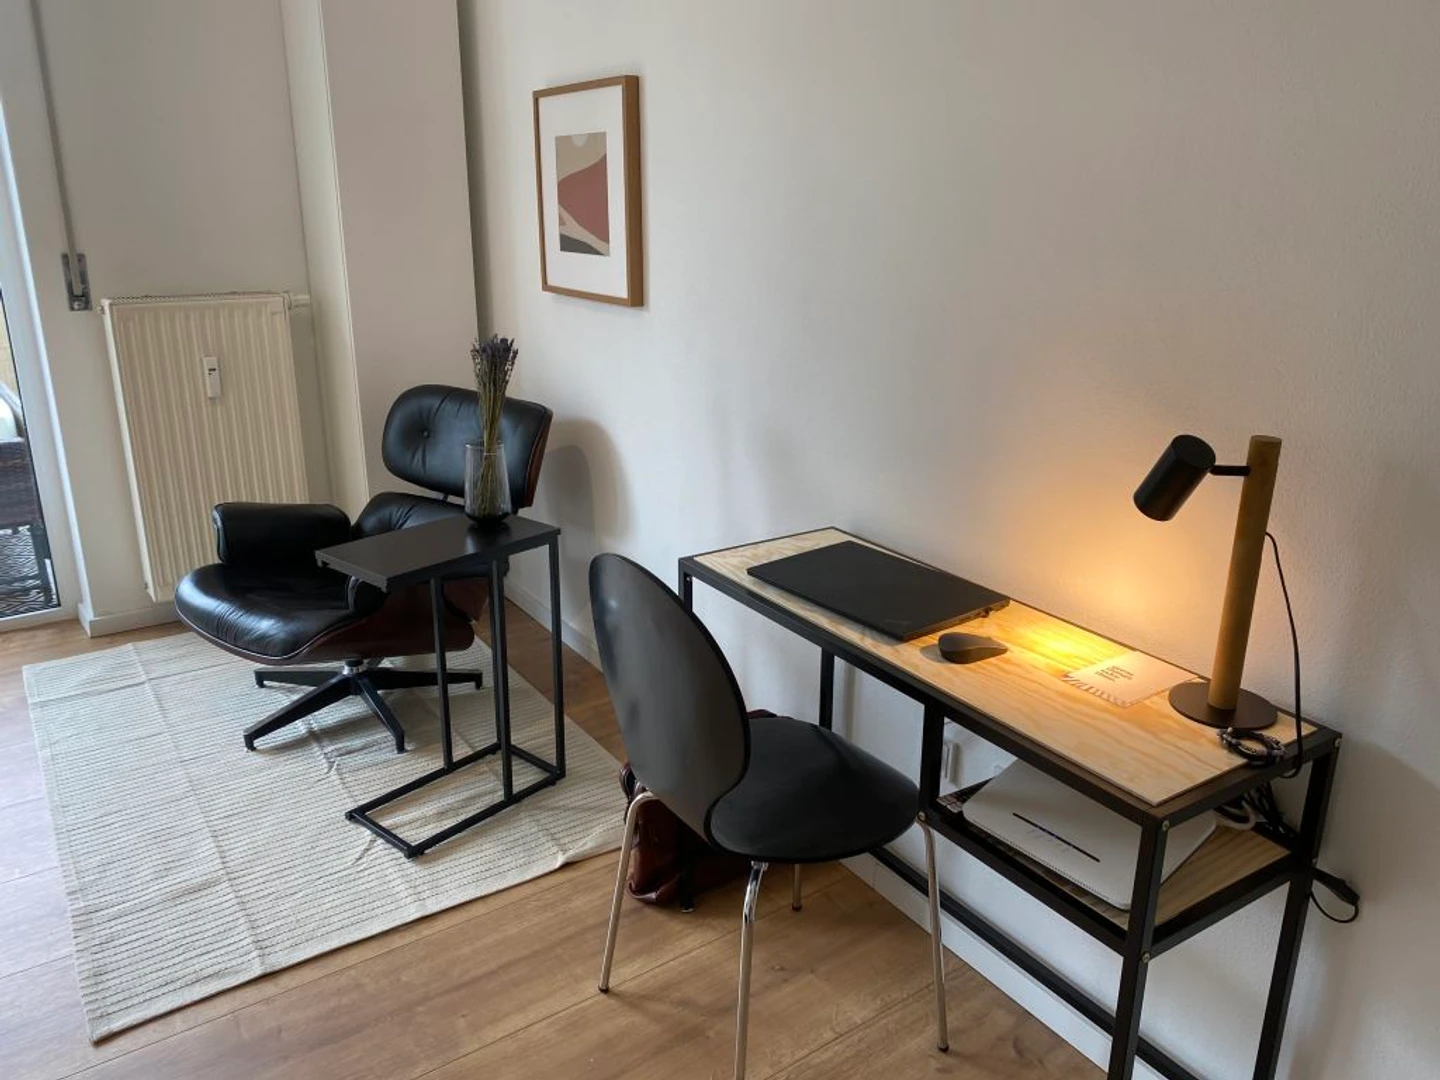 Great studio apartment in Dresden